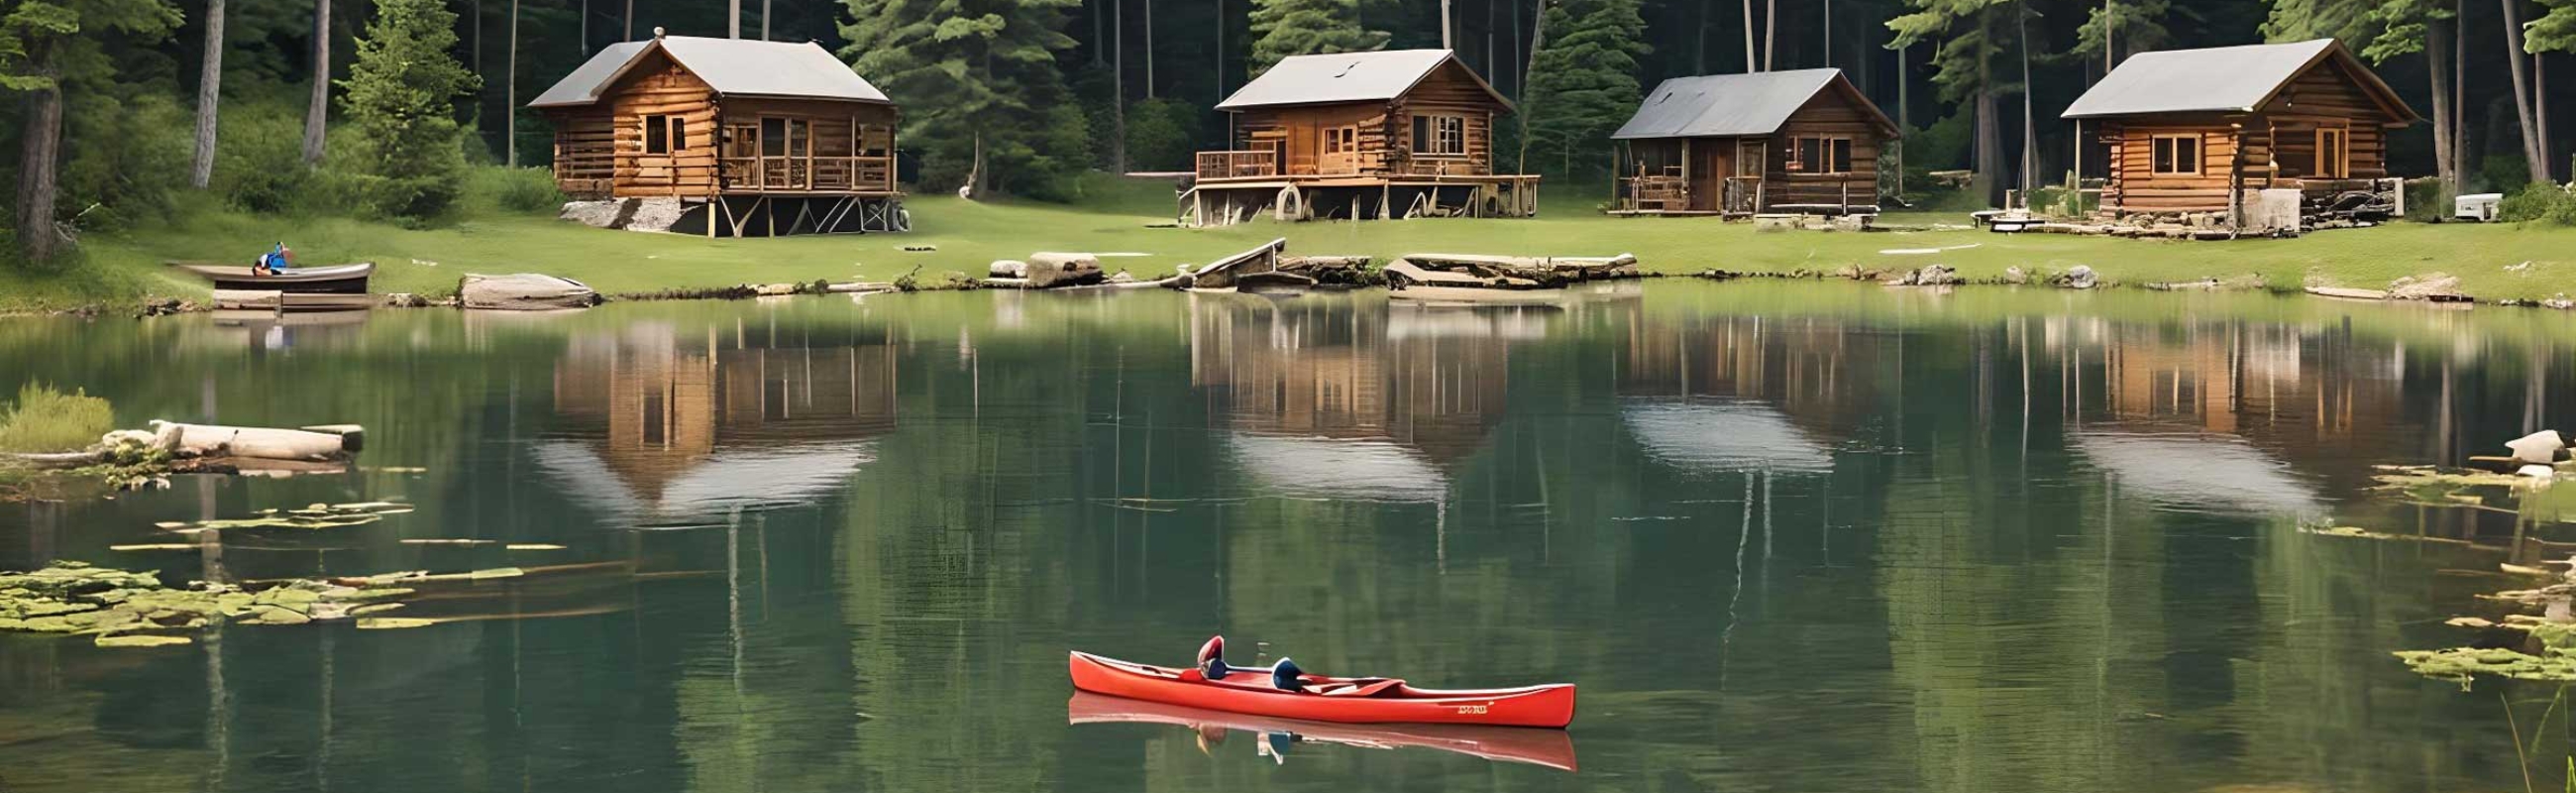 Brit_Axton_Slider_Summer_Camp_Cabins_Canoe